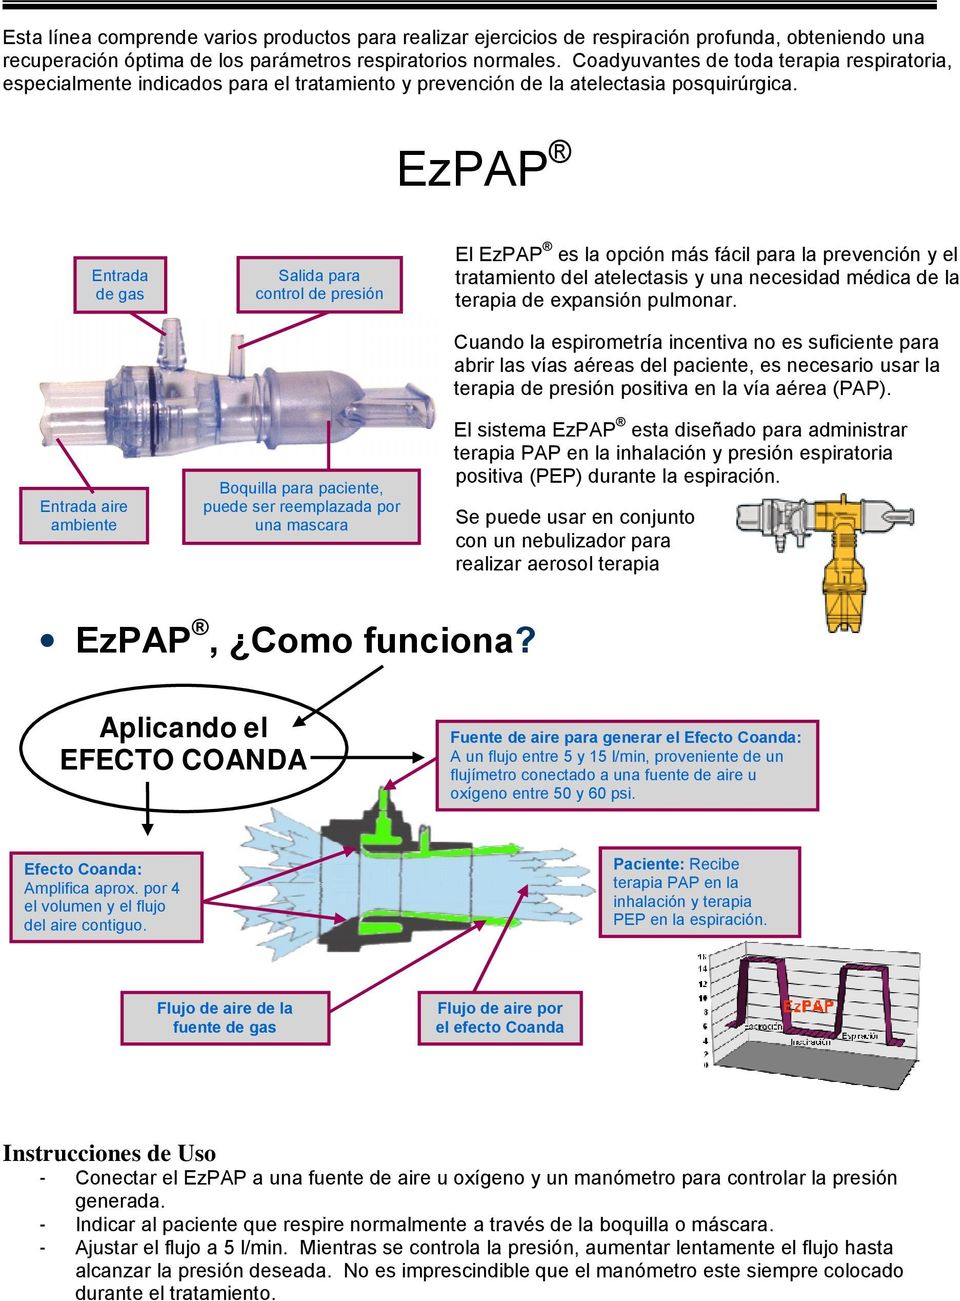 EzPAP Entrada de gas Entrada aire ambiente Salida para control de presión Boquilla para paciente, puede ser reemplazada por una mascara El EzPAP es la opción más fácil para la prevención y el